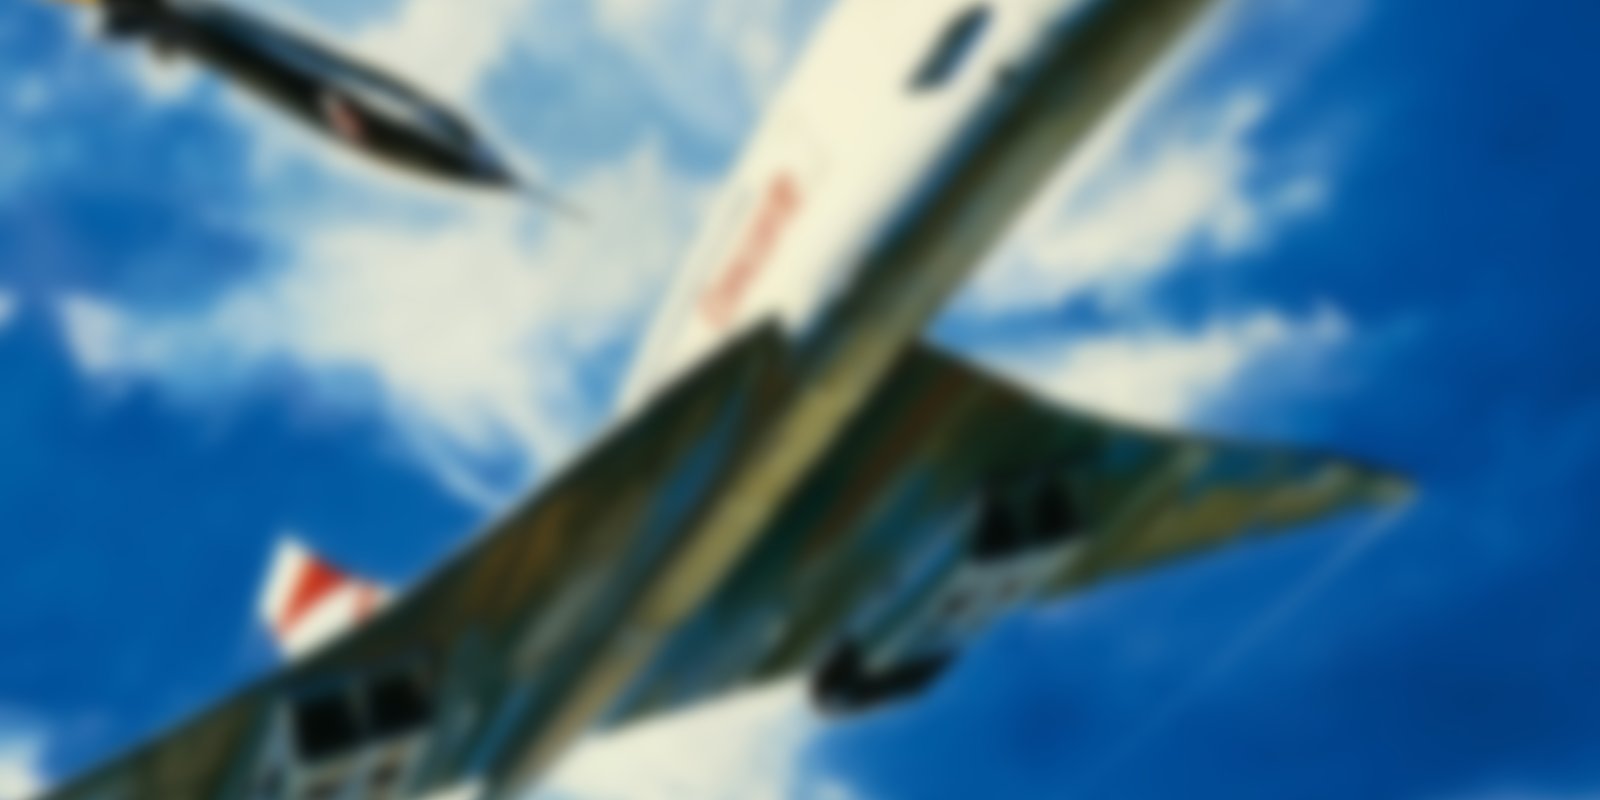 Airport - Die Concorde